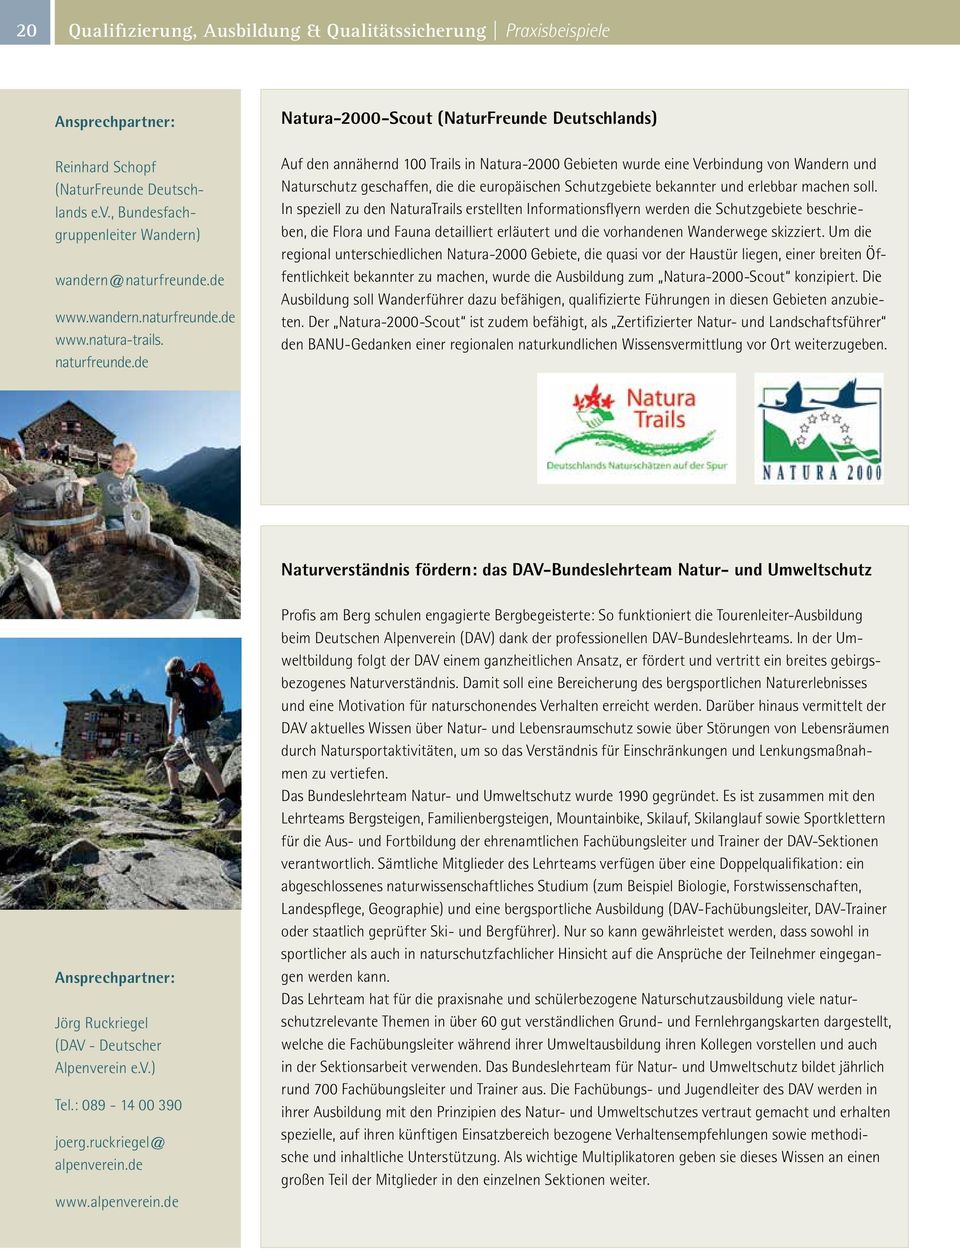 de Natura-2000-Scout (NaturFreunde Deutschlands) Auf den annähernd 100 Trails in Natura-2000 Gebieten wurde eine Verbindung von Wandern und Naturschutz geschaffen, die die europäischen Schutzgebiete